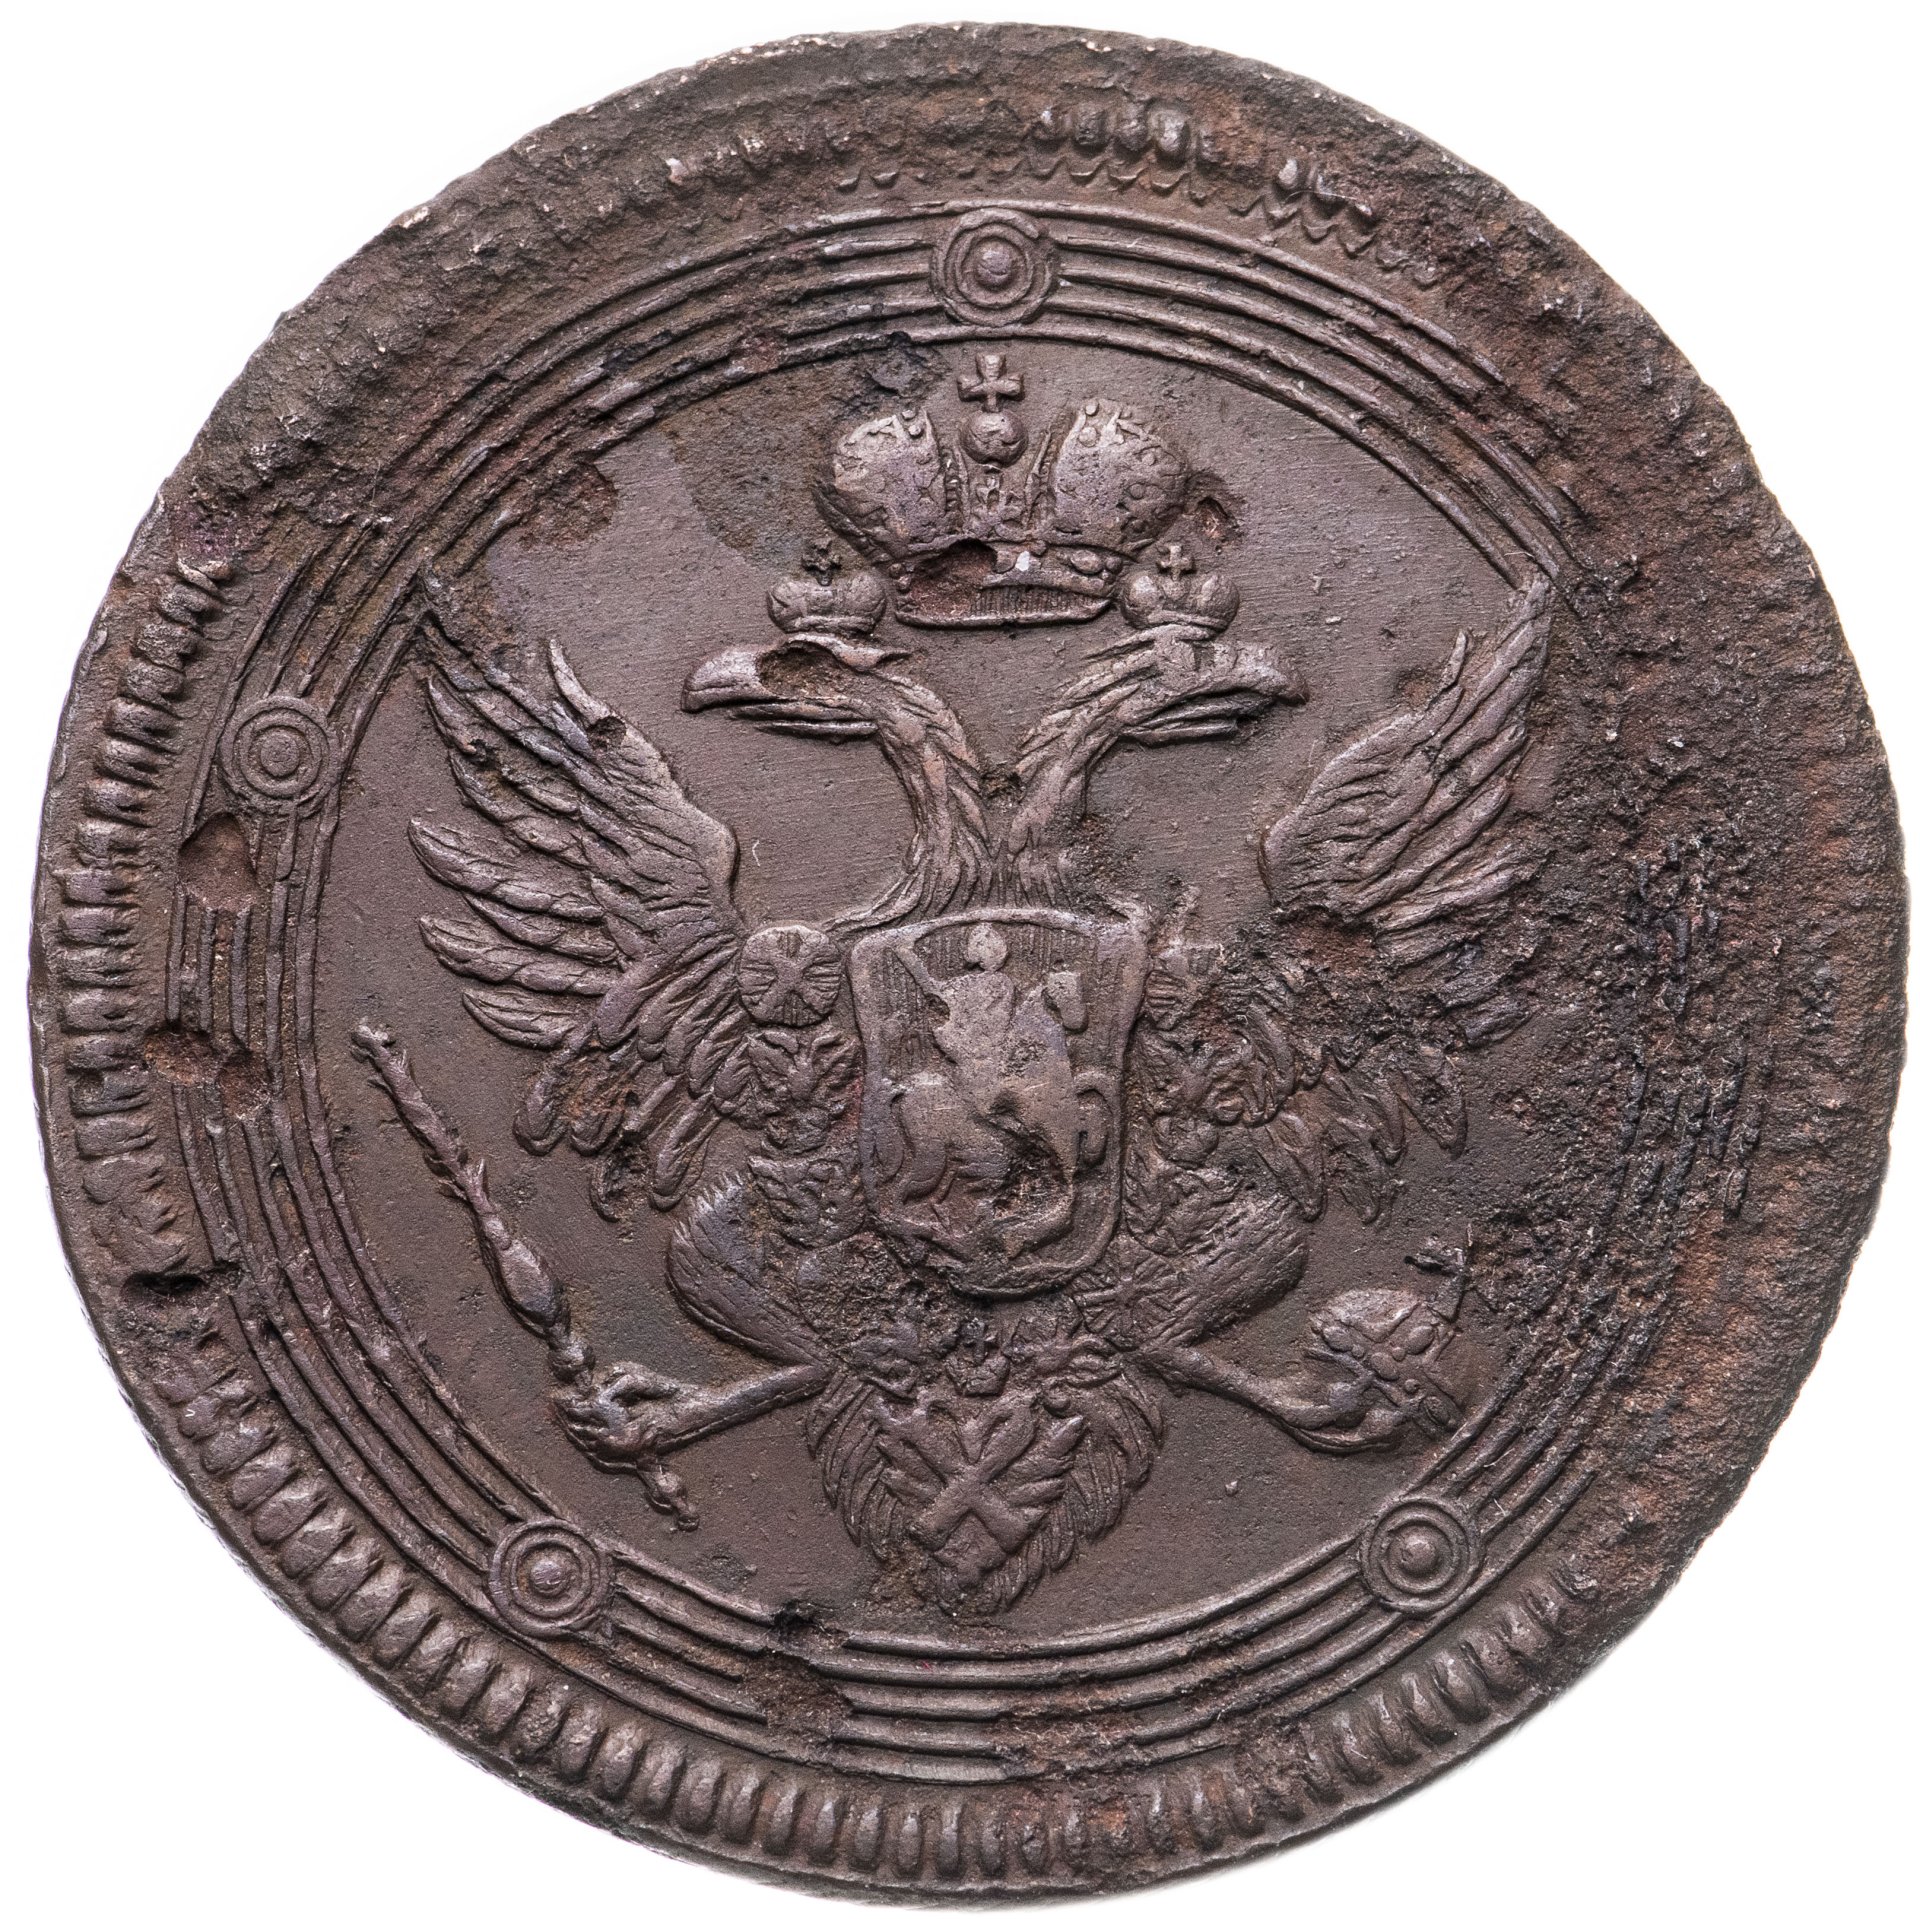 Герб орёл и Лев на монете. Как выглядят монеты царской Россией 1814 года. Медные монеты царской России 1700-1917 цена.